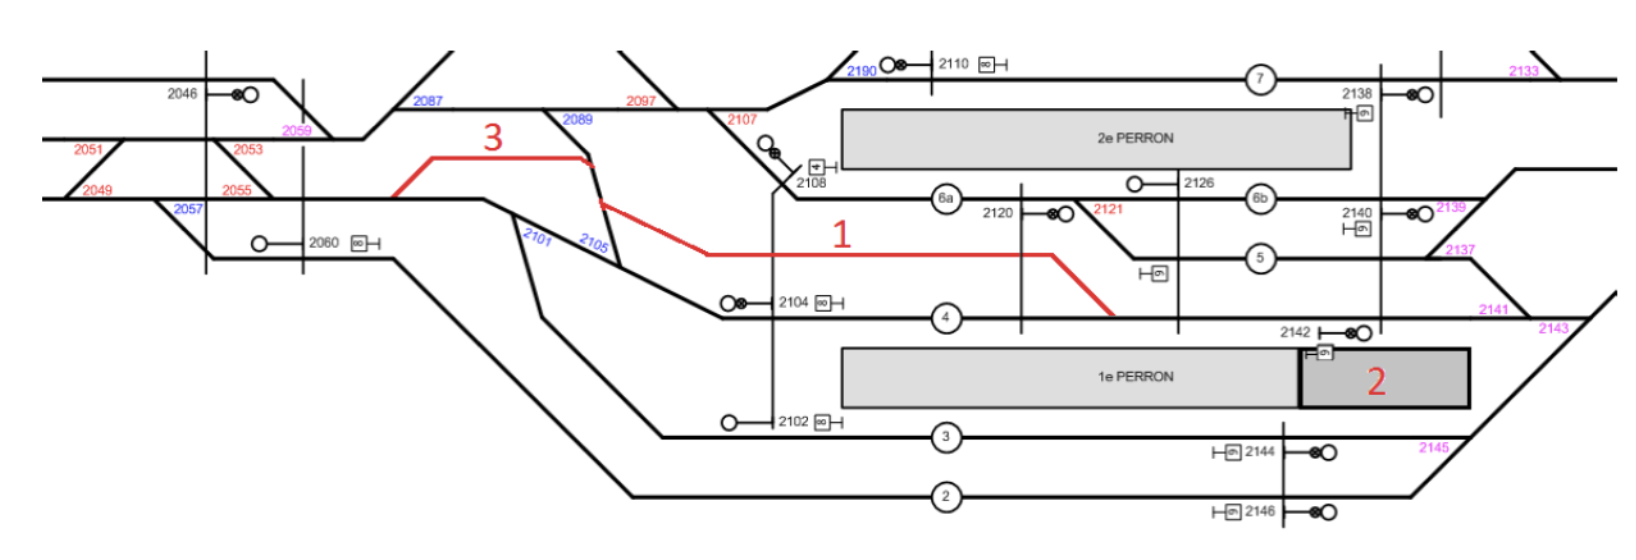 Grafiek perron treinstation Arnhem, consultatiedocument ProRail